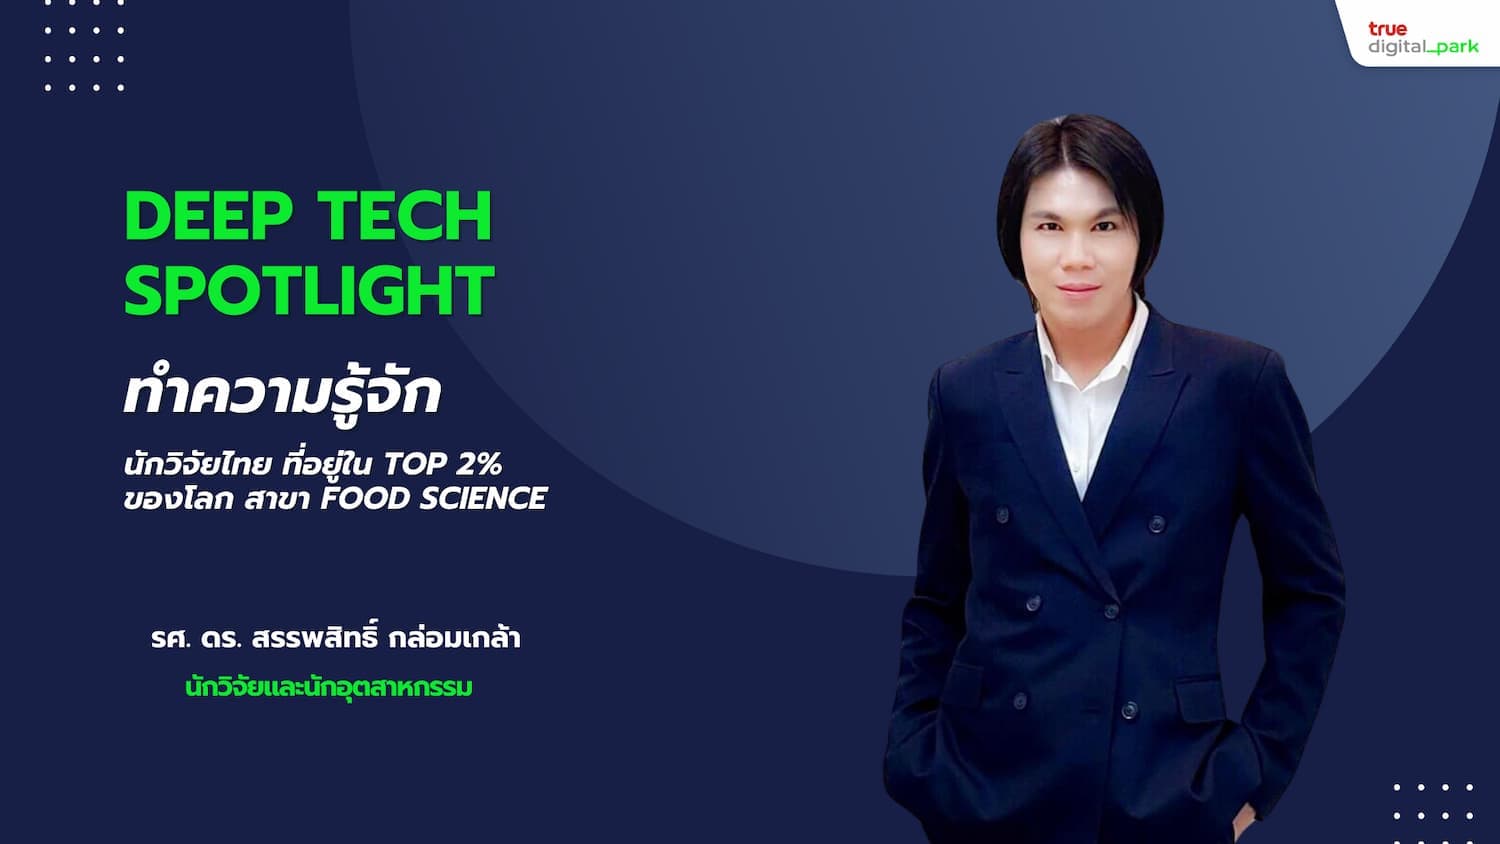 Deep Tech Spotlight: รศ. ดร. สรรพสิทธิ์ กล่อมเกล้า นักวิจัยและนักอุตสาหกรรมที่ทำให้ประเทศไทยโดดเด่นในสาขา Food Science และการใช้ประโยชน์จากวัสดุเศษเหลือ